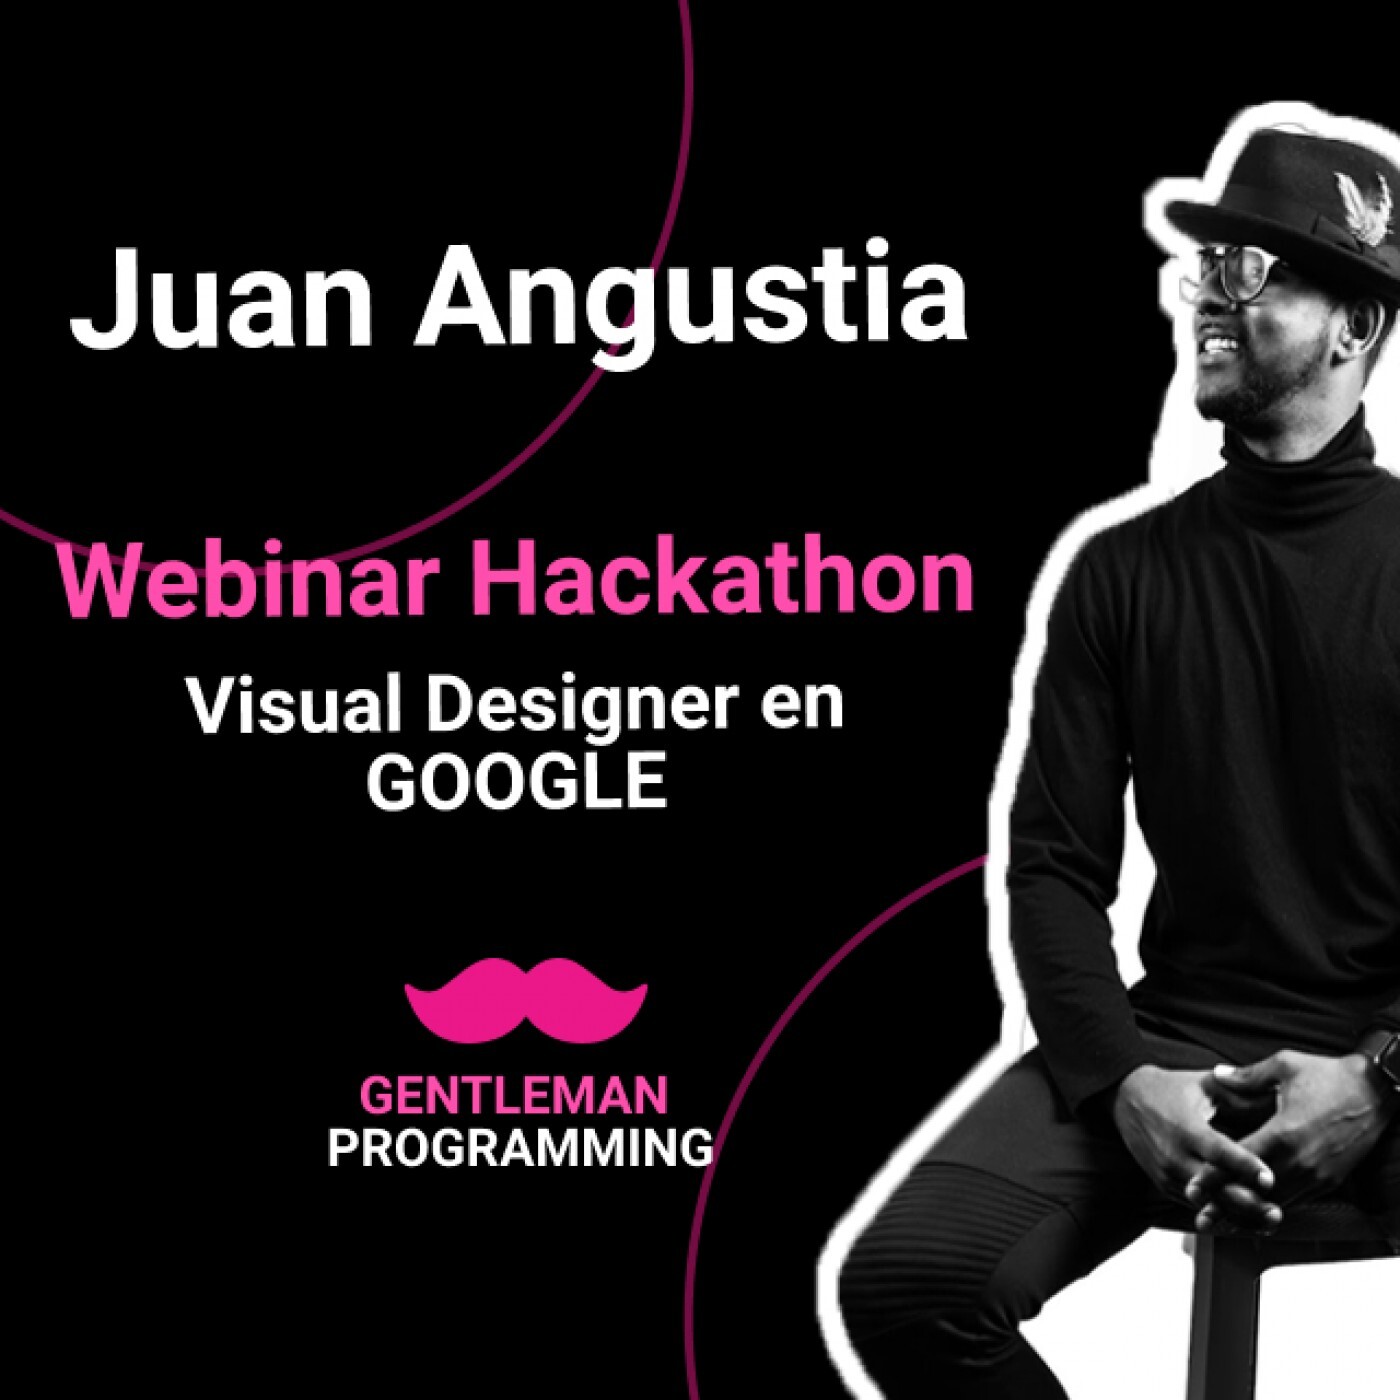 Entrevista al genio de Juan Angustia, Visual Designer en Google, como primer webinar del Hackathon !